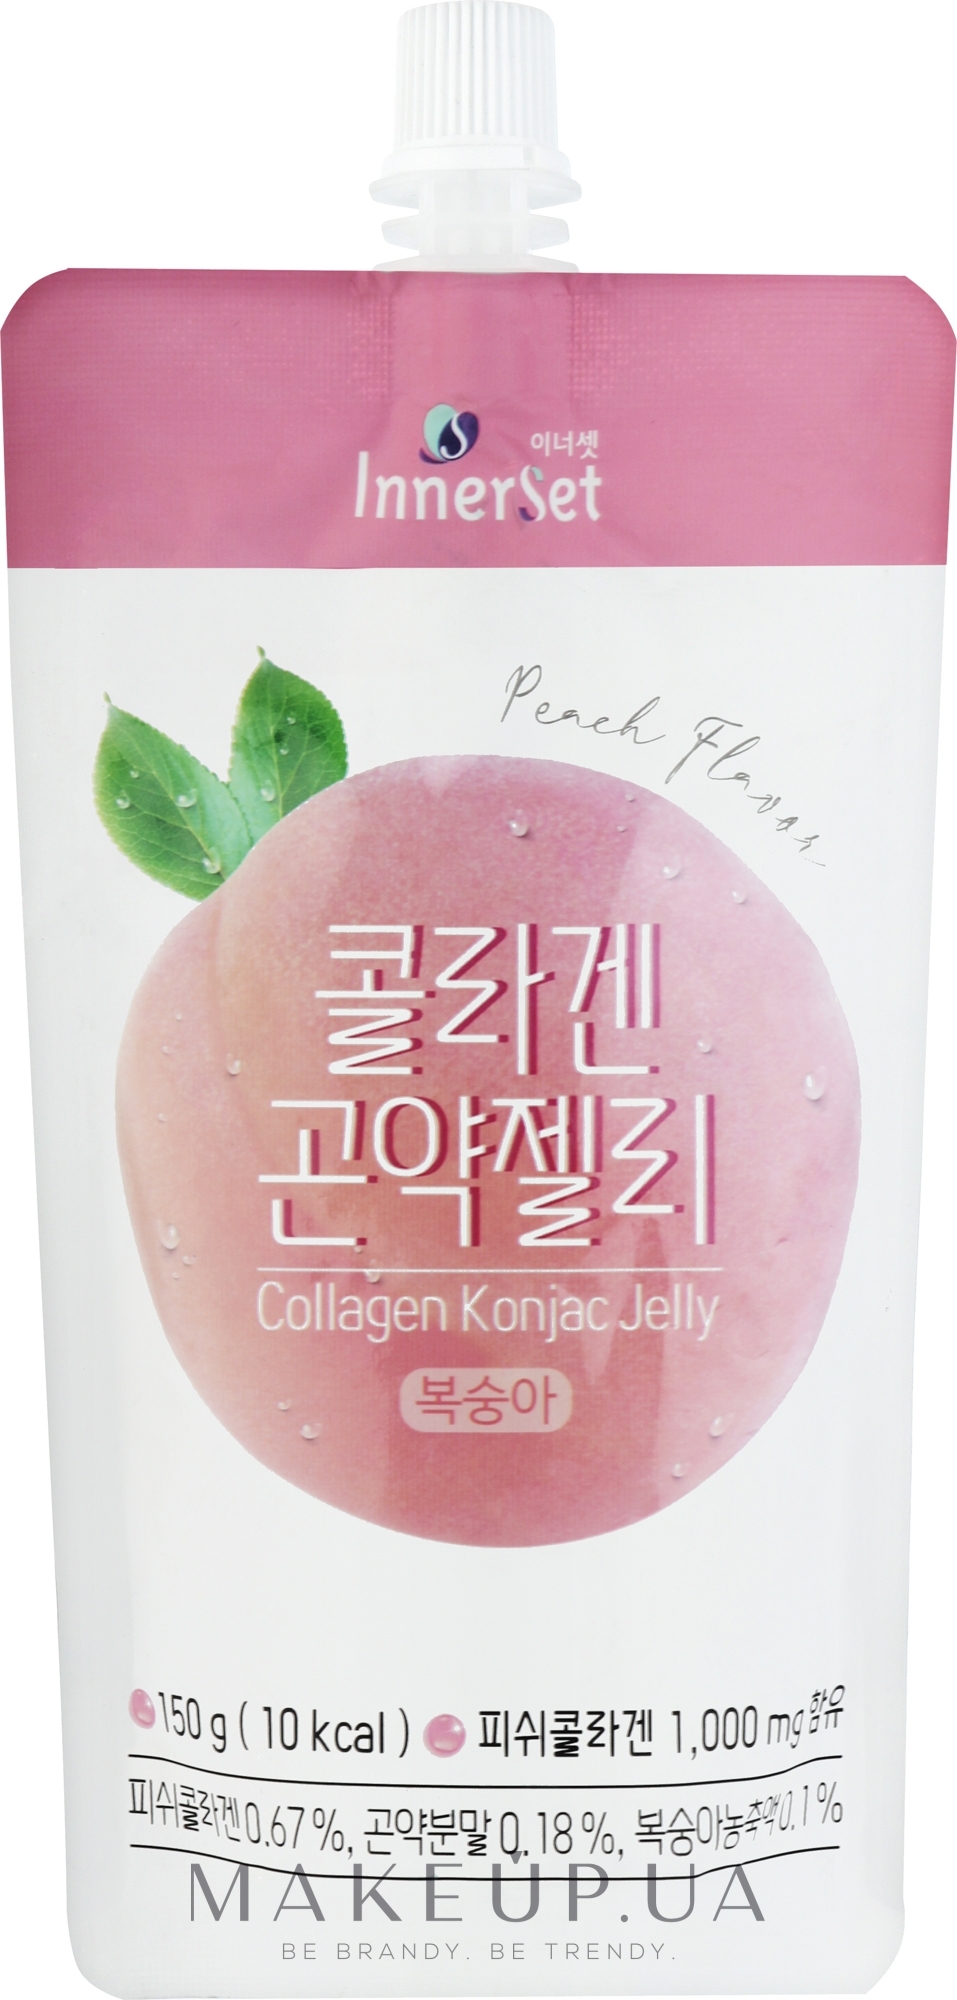 Їстівне колагенове желе з екстрактом персика - Innerset Collagen Konjac Jelly — фото 150g